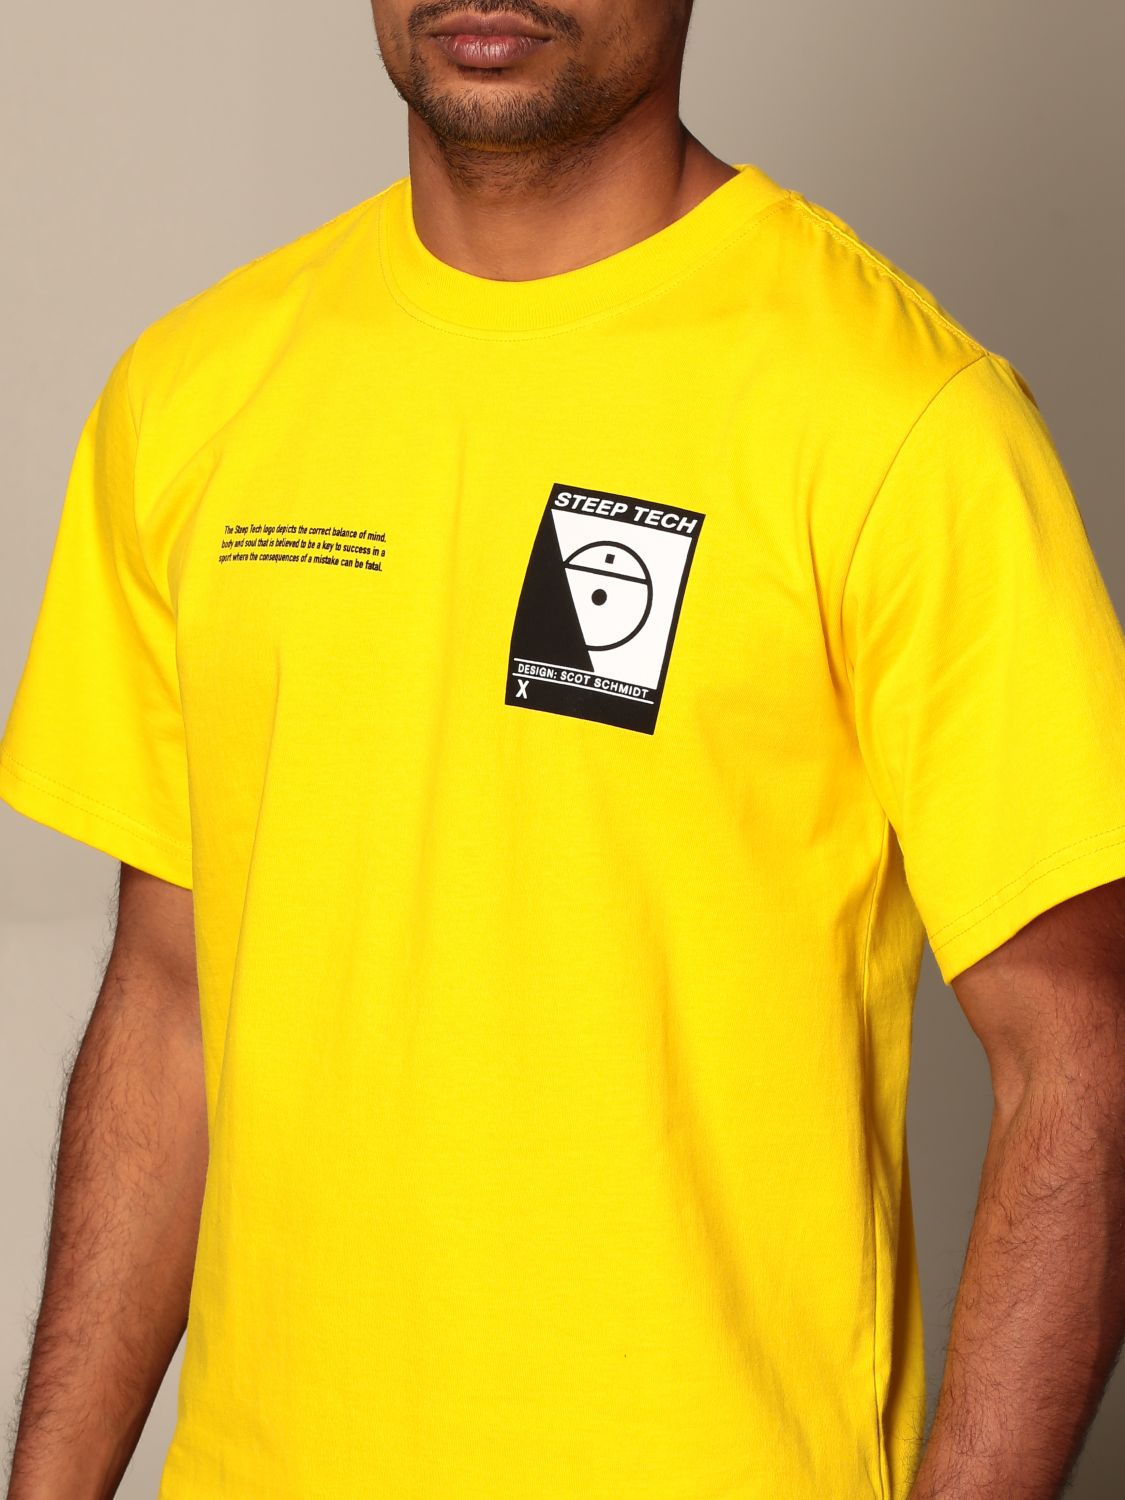 north face yellow shirt